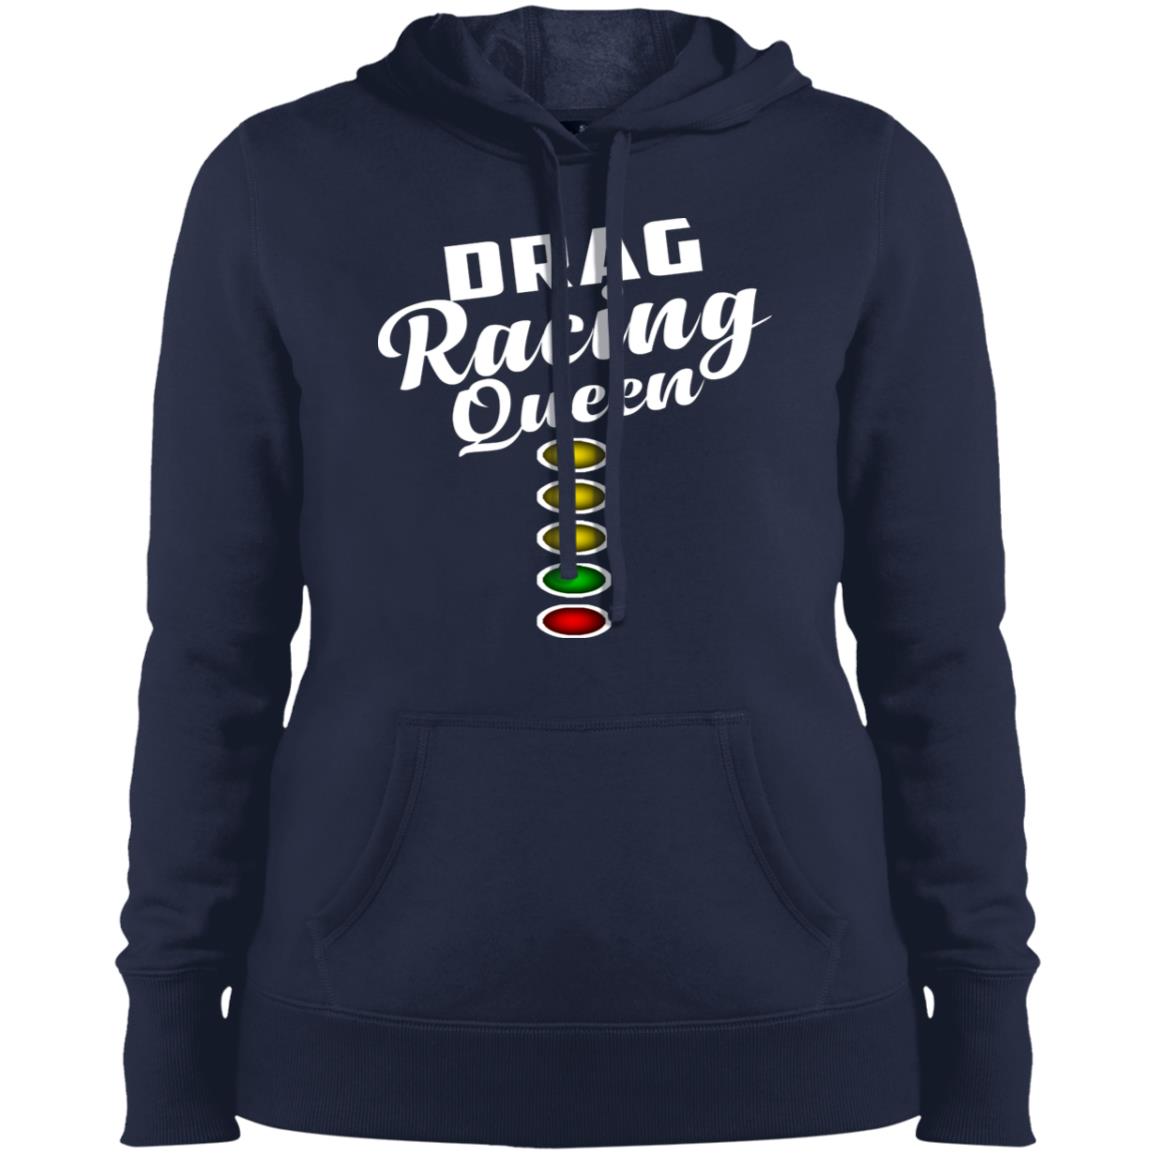 Drag racing hoodie